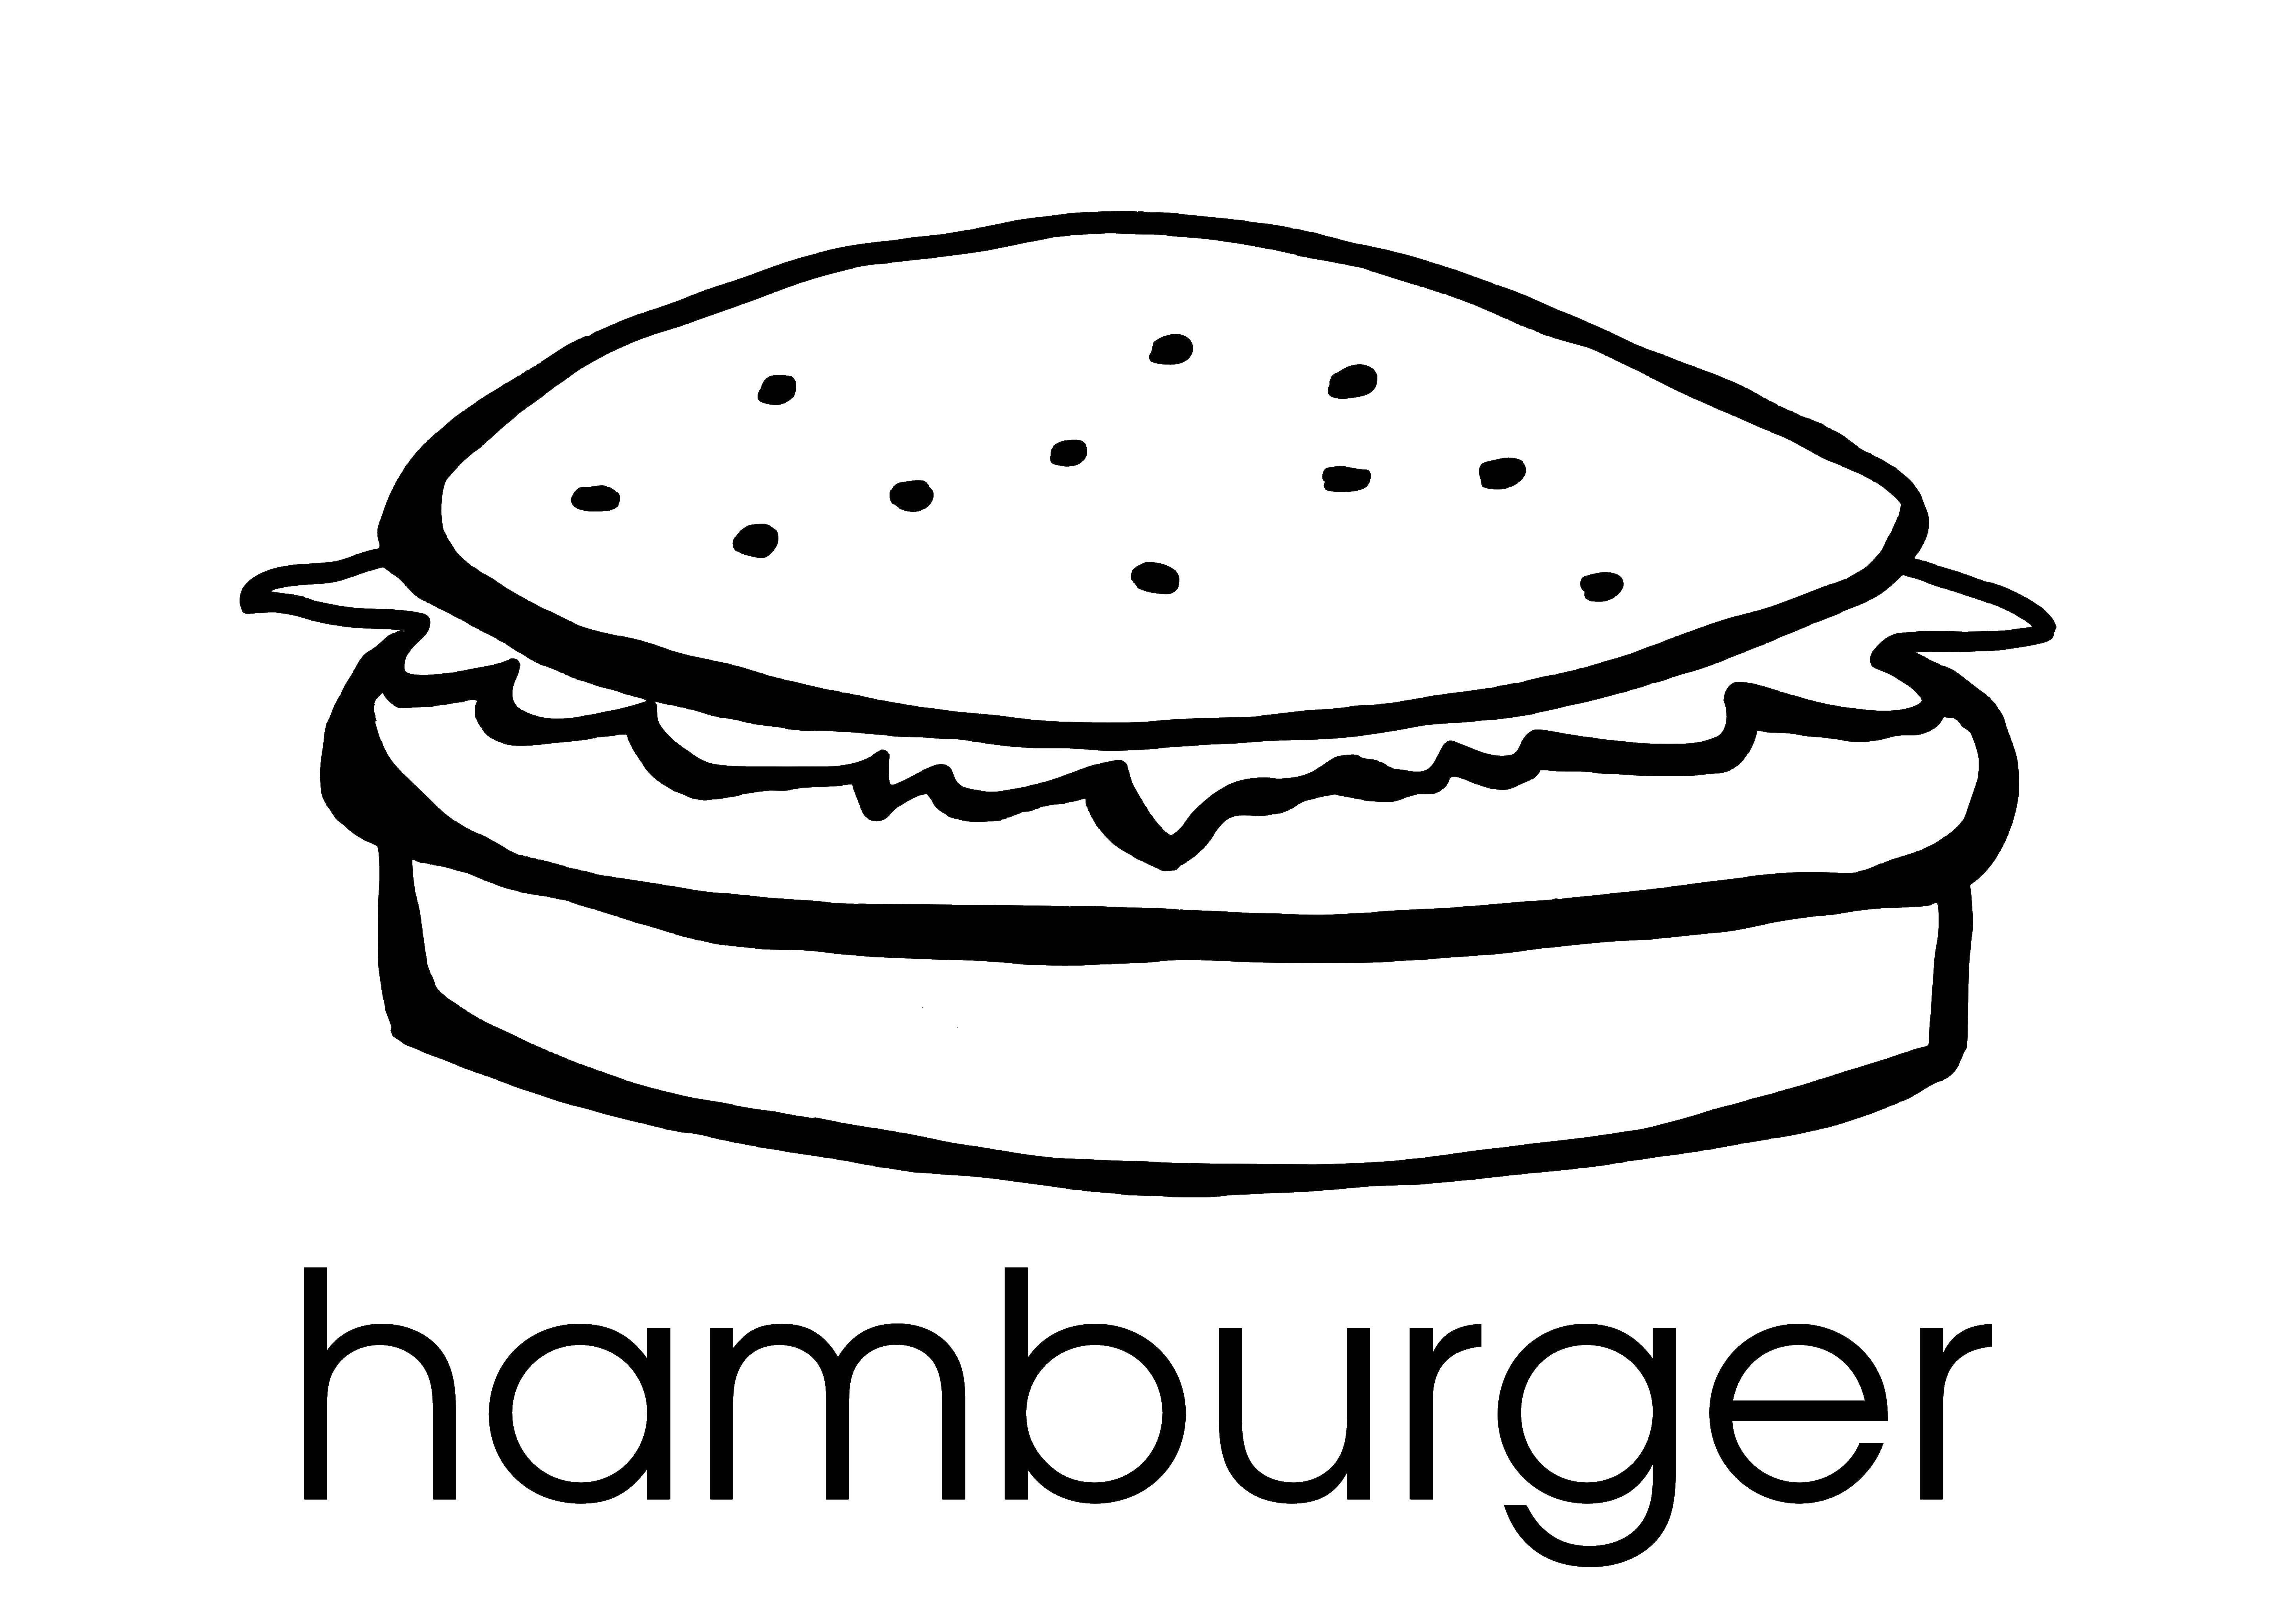 Опис: розмальовки  Гамбургер фаст фуд. Категорія: Їжа. Теги:  гамбургер, фаст фуд.